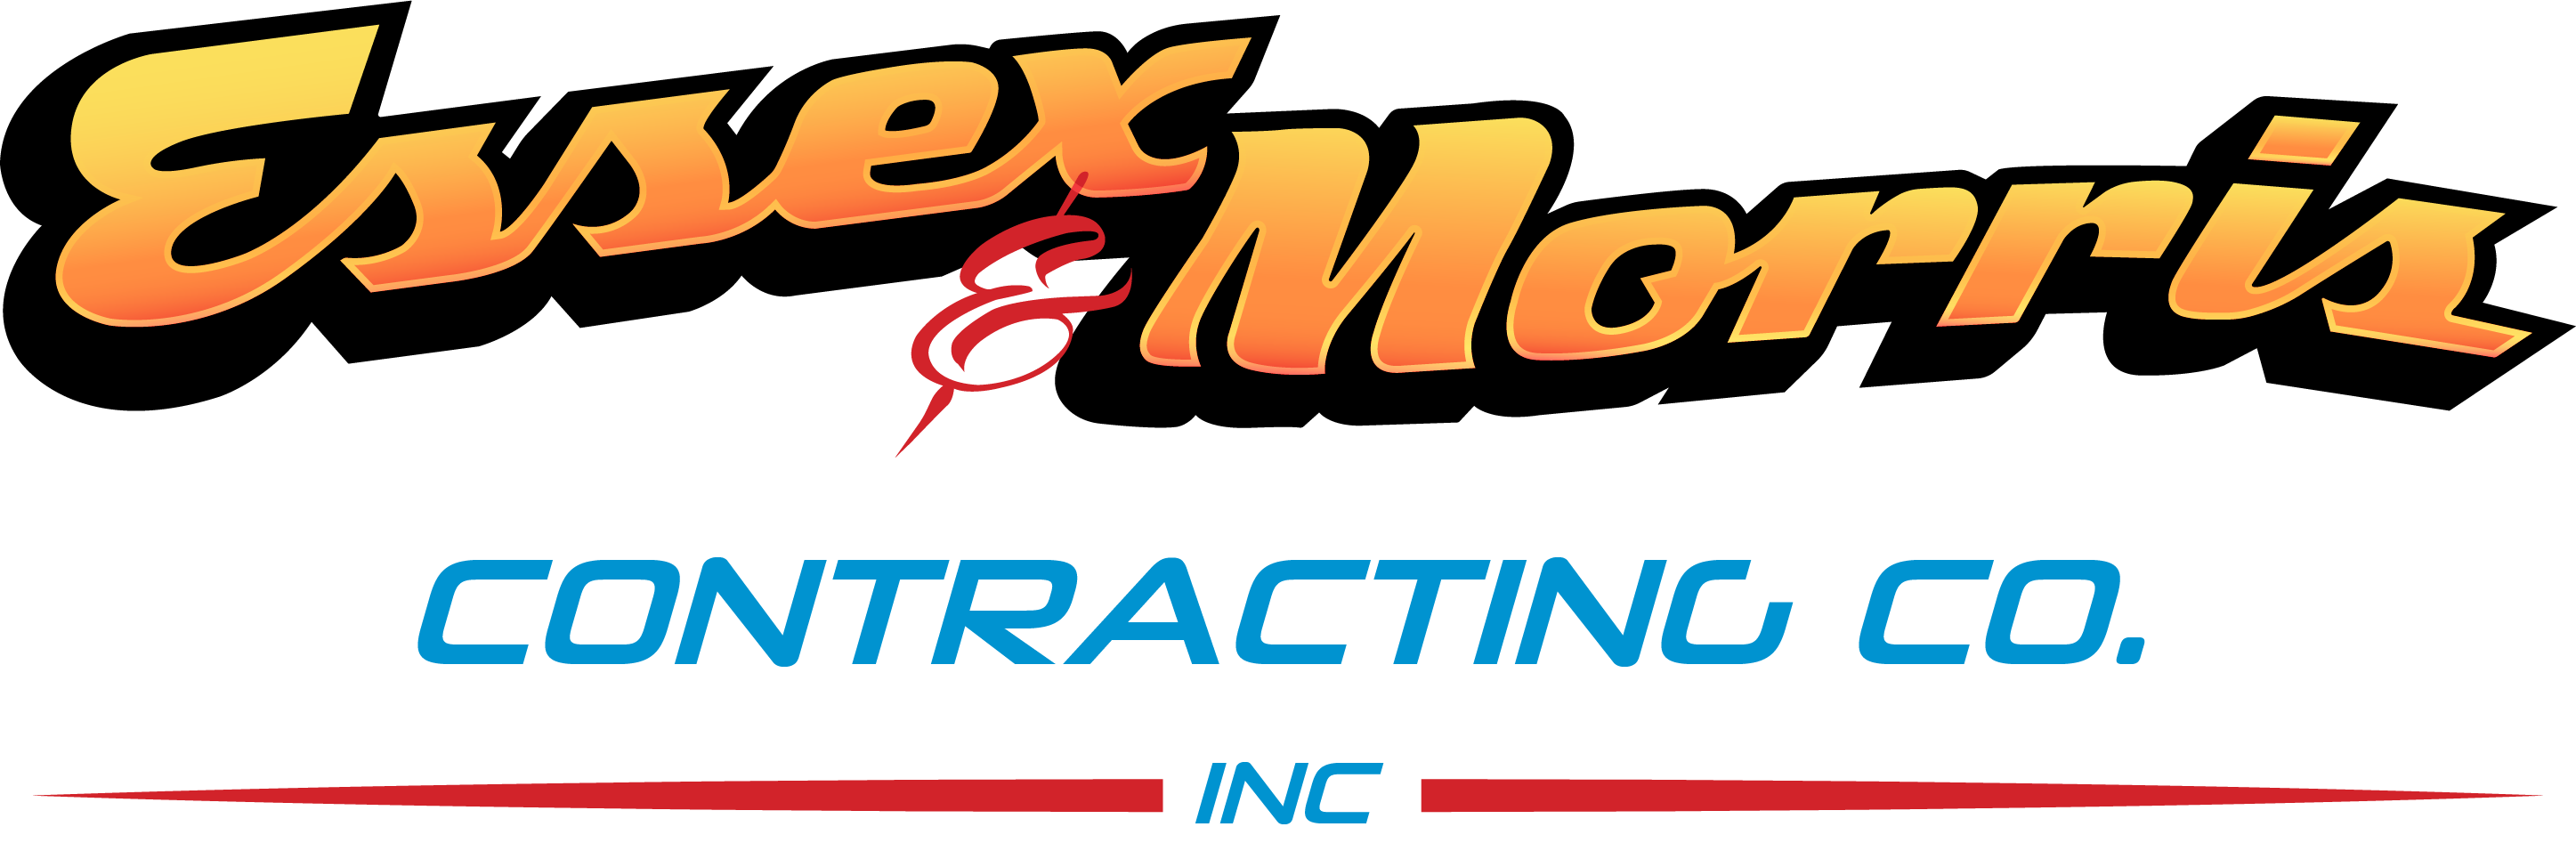 Essex & Morris Contracting Co., Inc. Logo